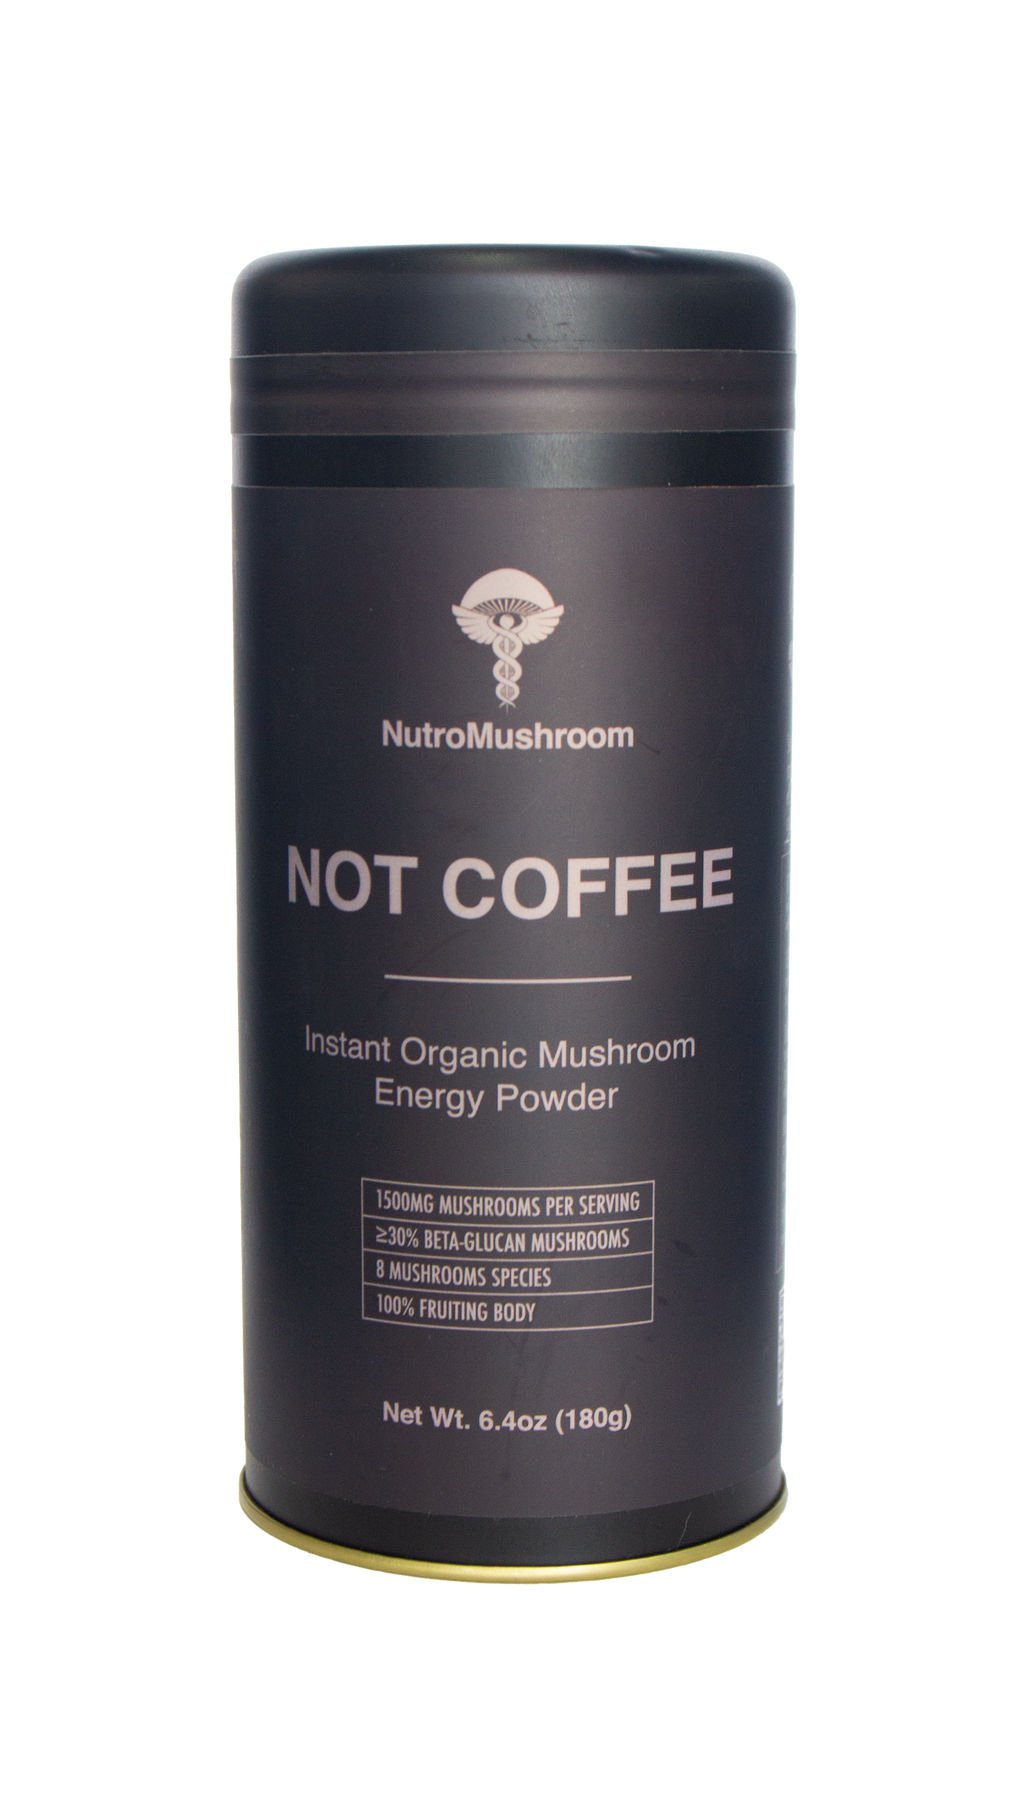 NutroMushroom "Not Coffee"